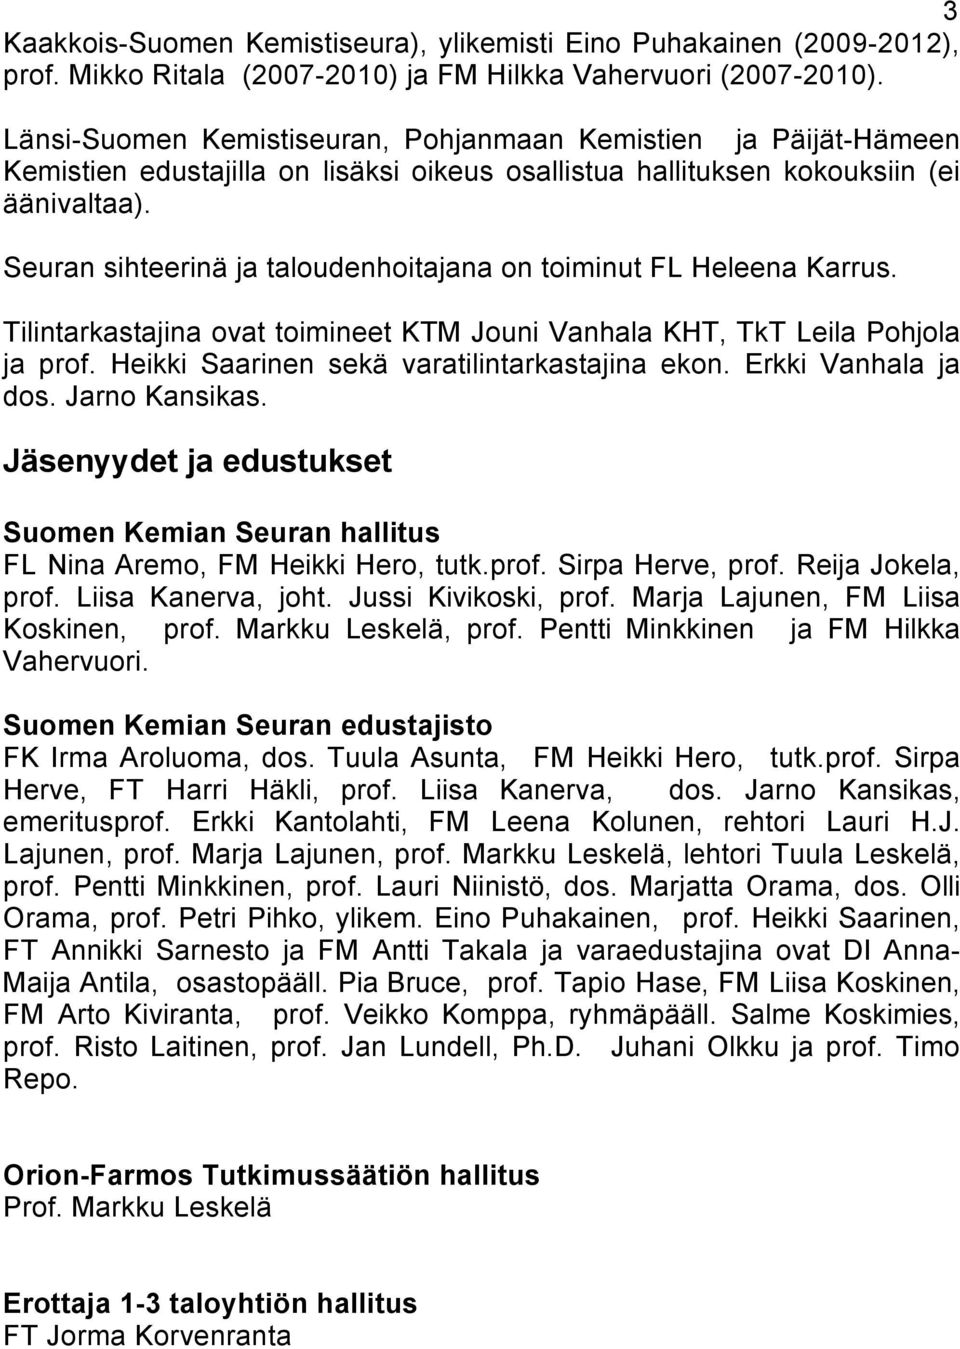 Seuran sihteerinä ja taloudenhoitajana on toiminut FL Heleena Karrus. Tilintarkastajina ovat toimineet KTM Jouni Vanhala KHT, TkT Leila Pohjola ja prof.